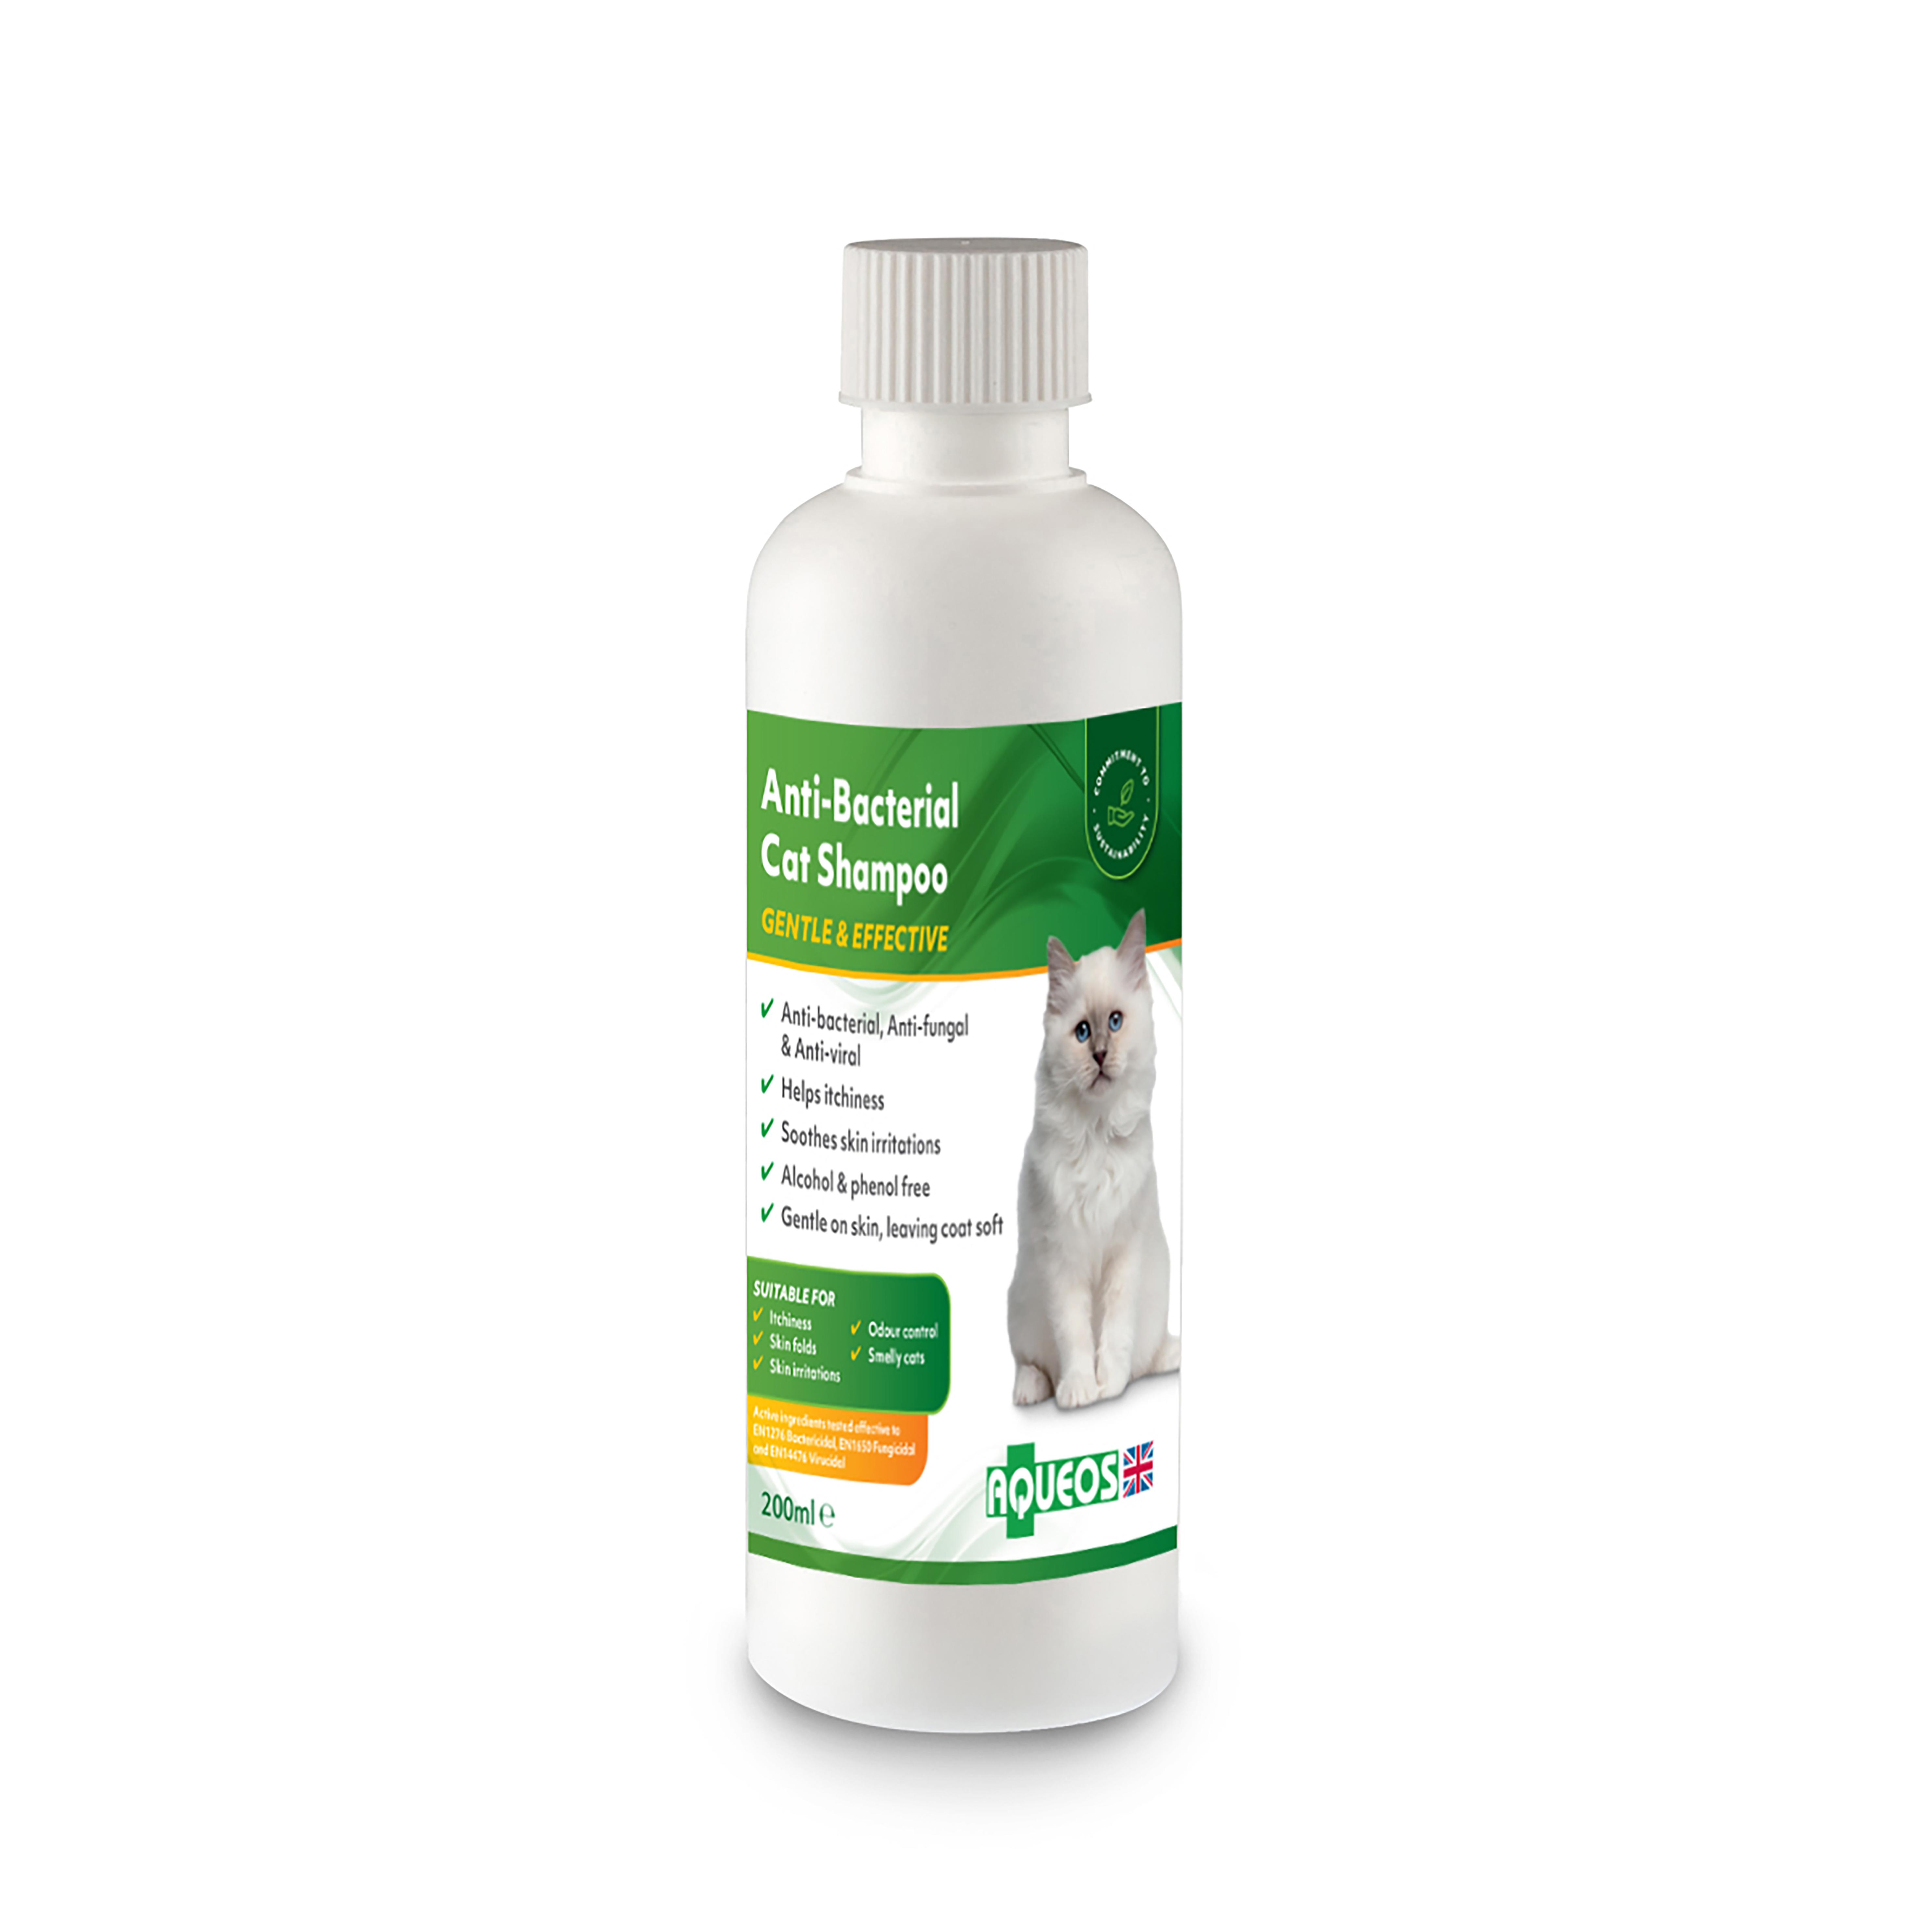 anti-bacterial, anti-fungal cat shampoo